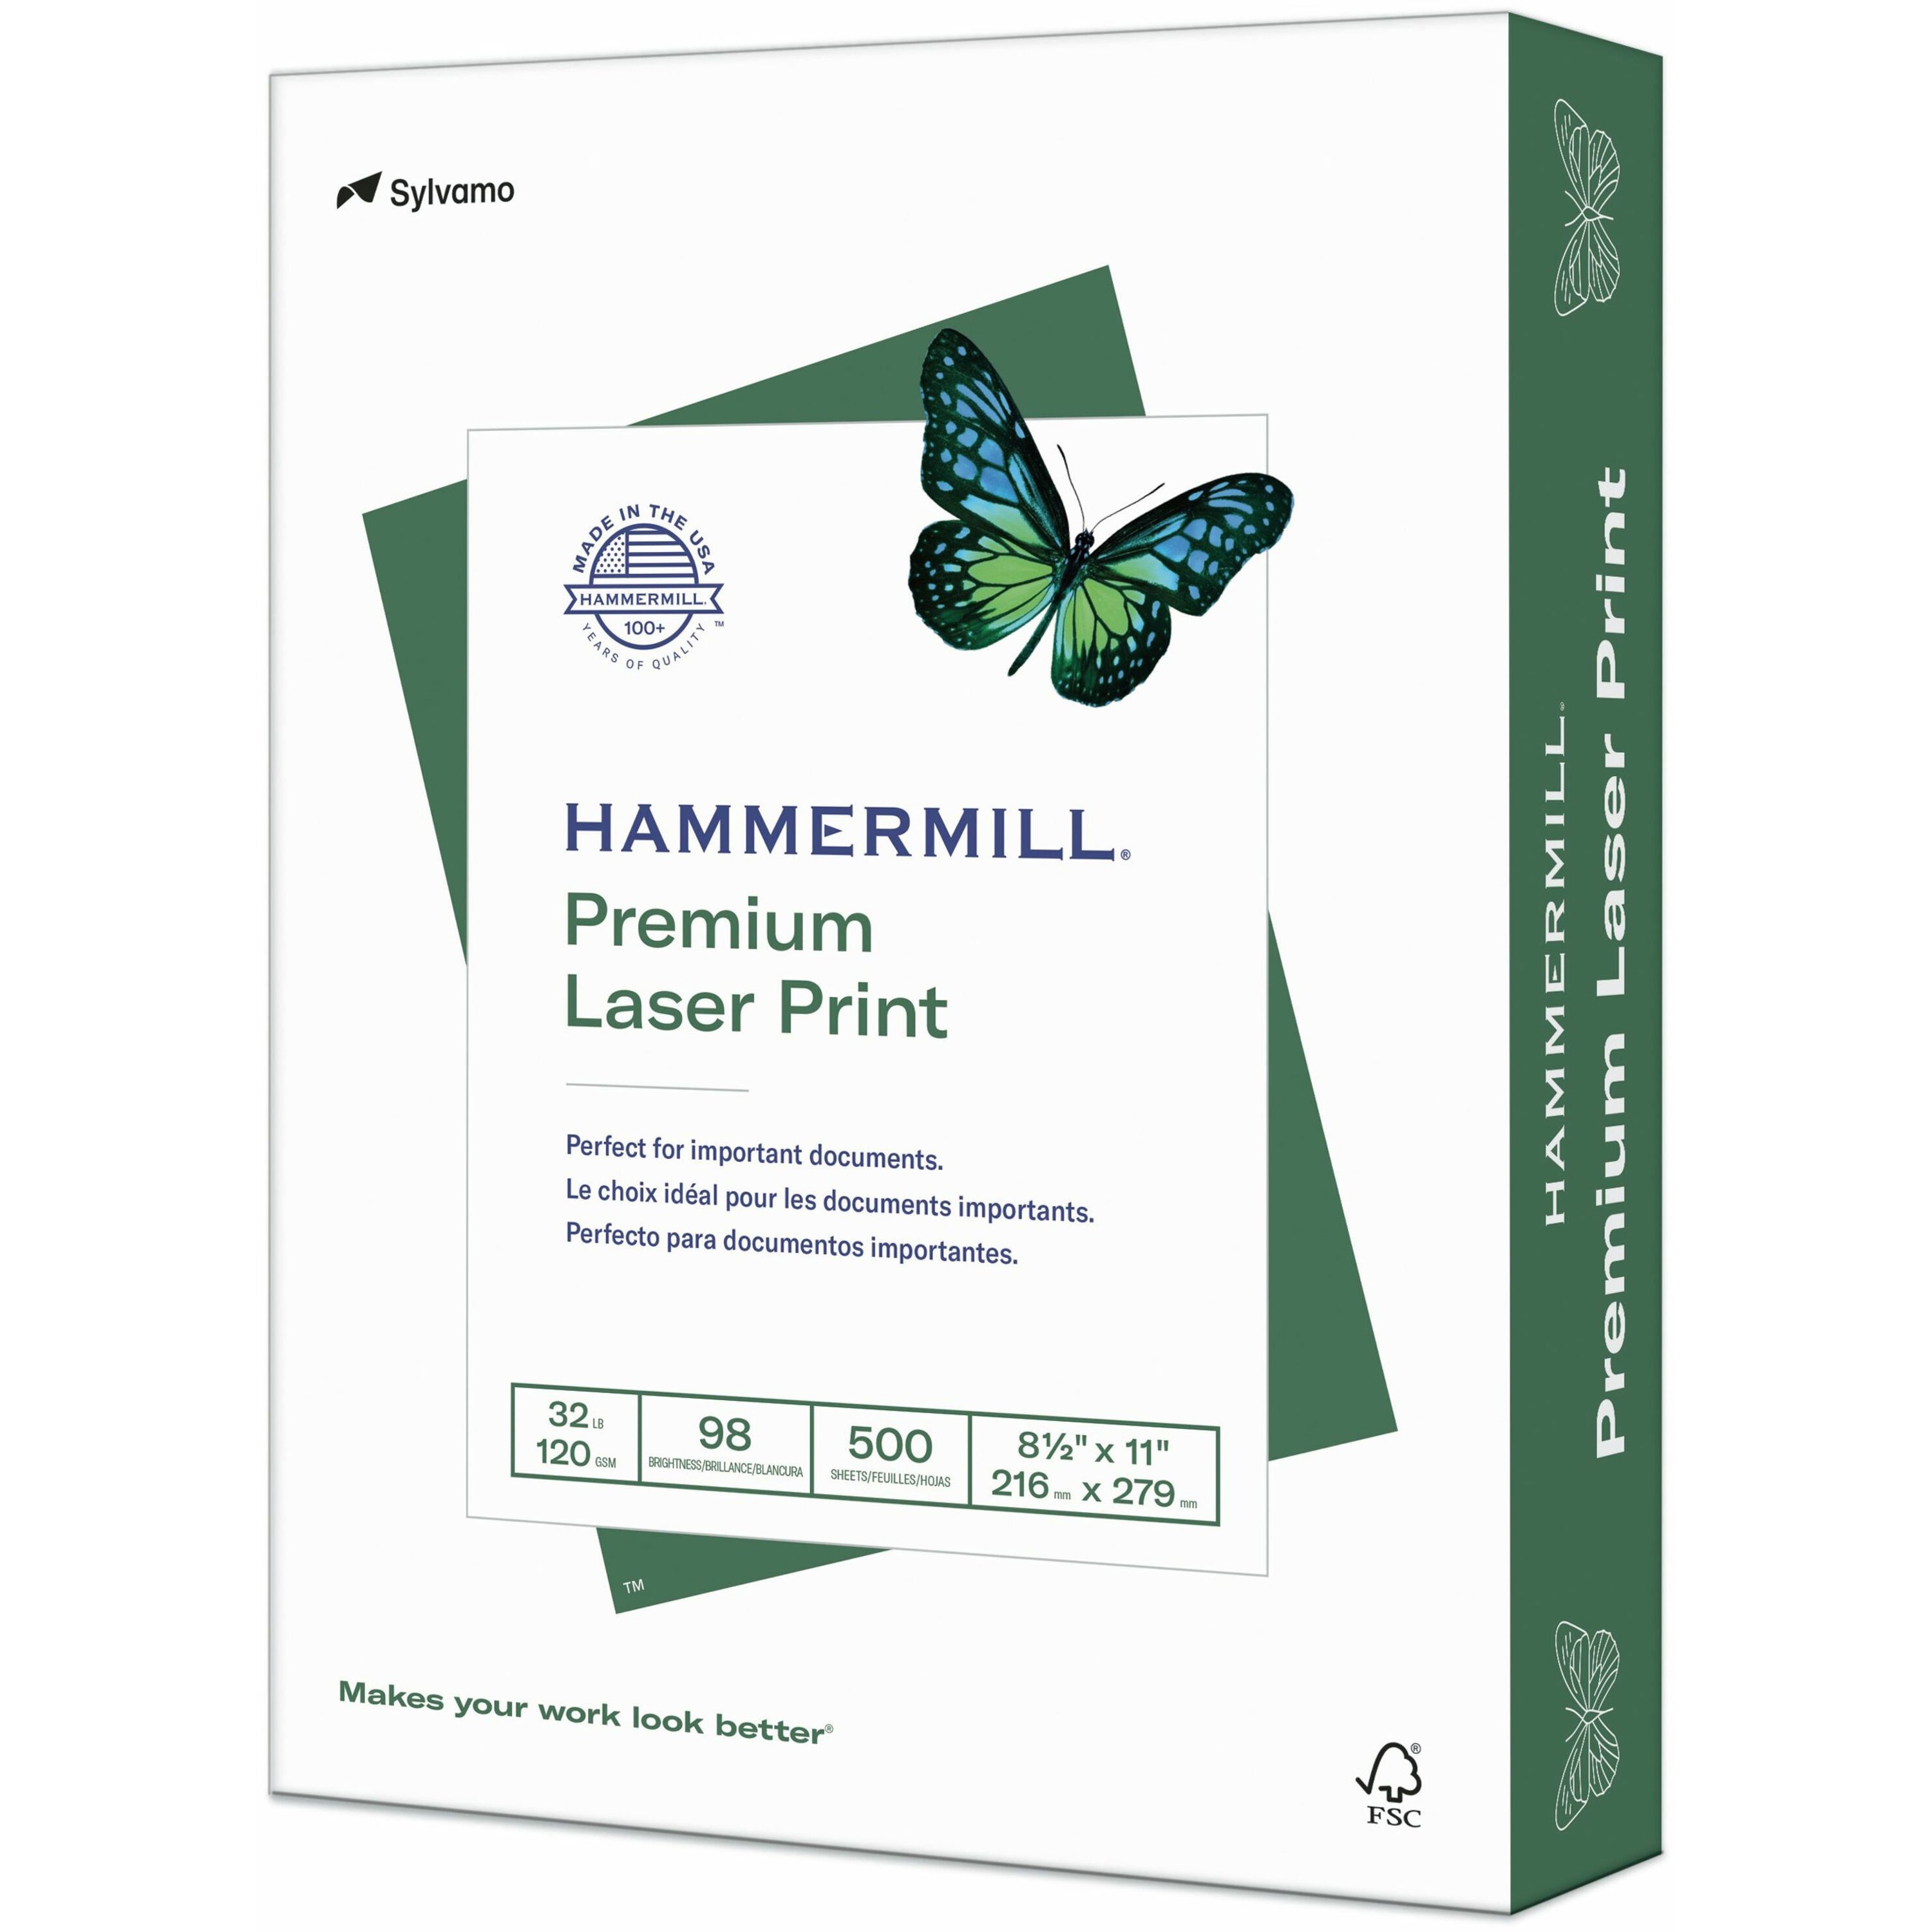 Hammermill Premium Color Copy Print Paper, 100 Bright, 28lb, 11 x 17,  Photo White, 500/Ream, HAM102541